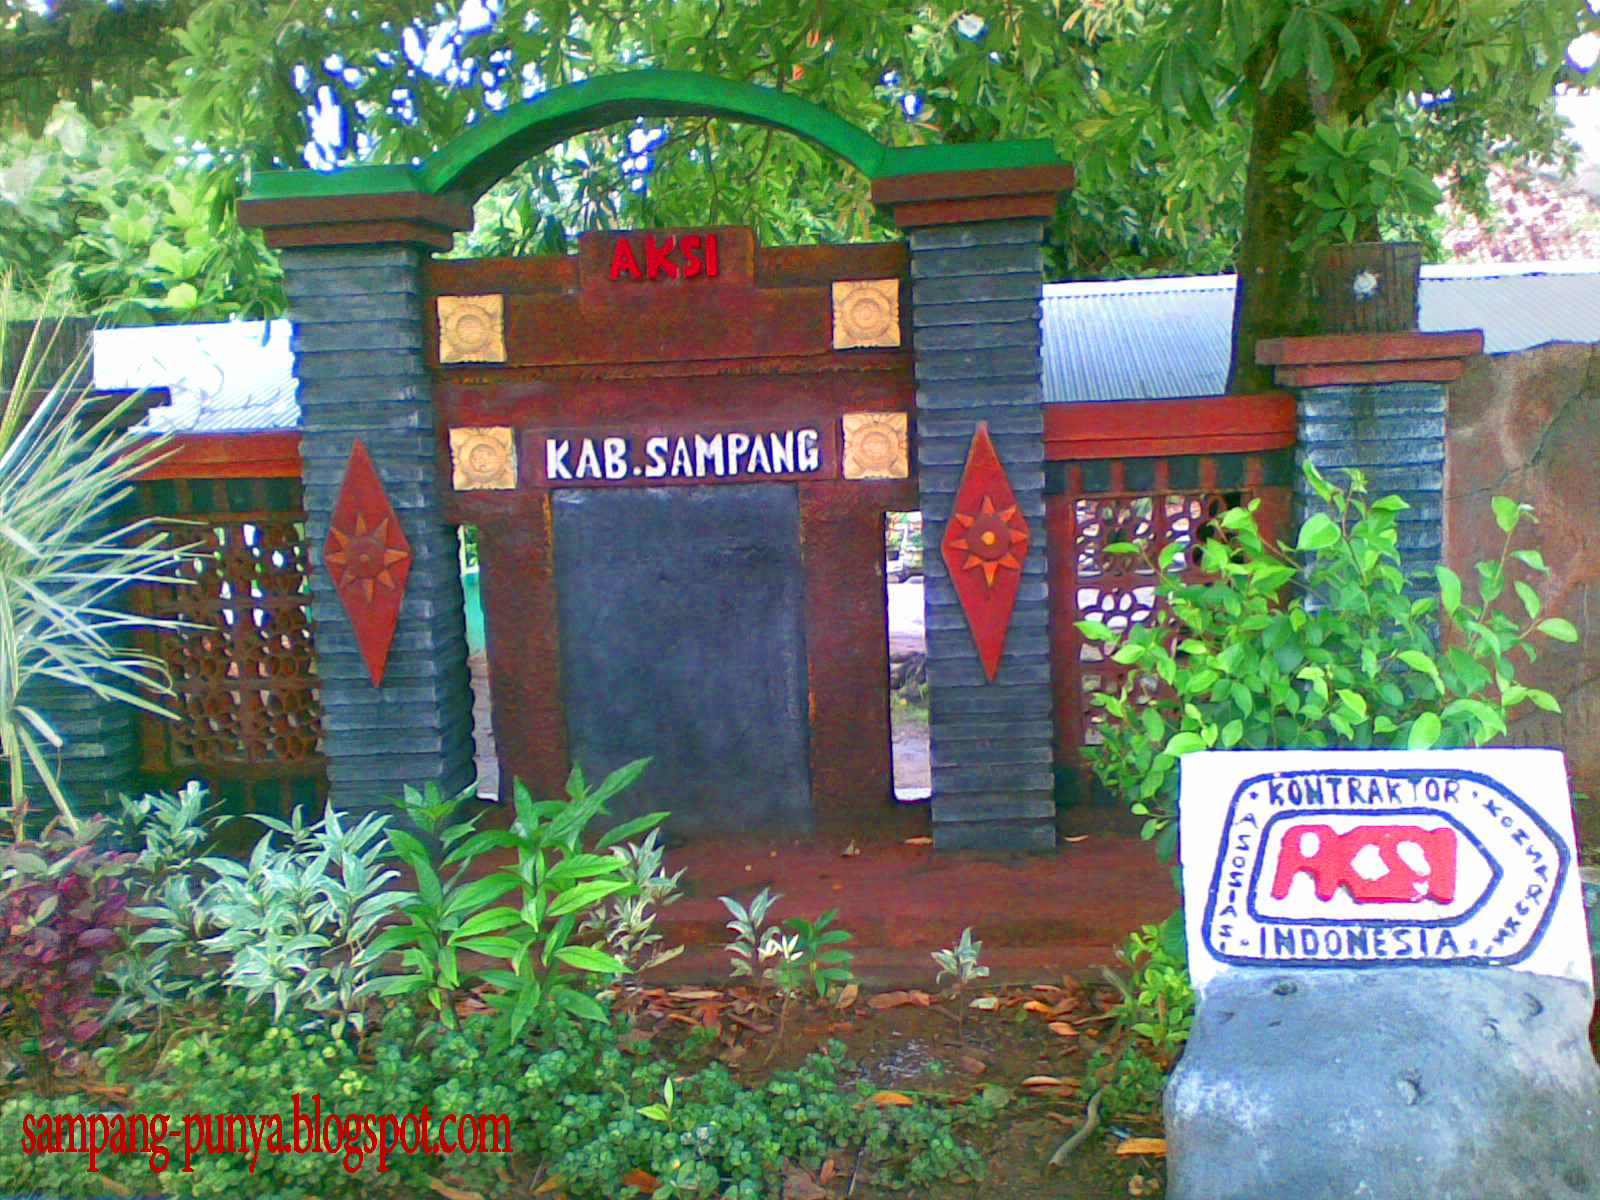 Taman Minimalis Di Pinggir Jalan Kota Sampang Sampang Punya